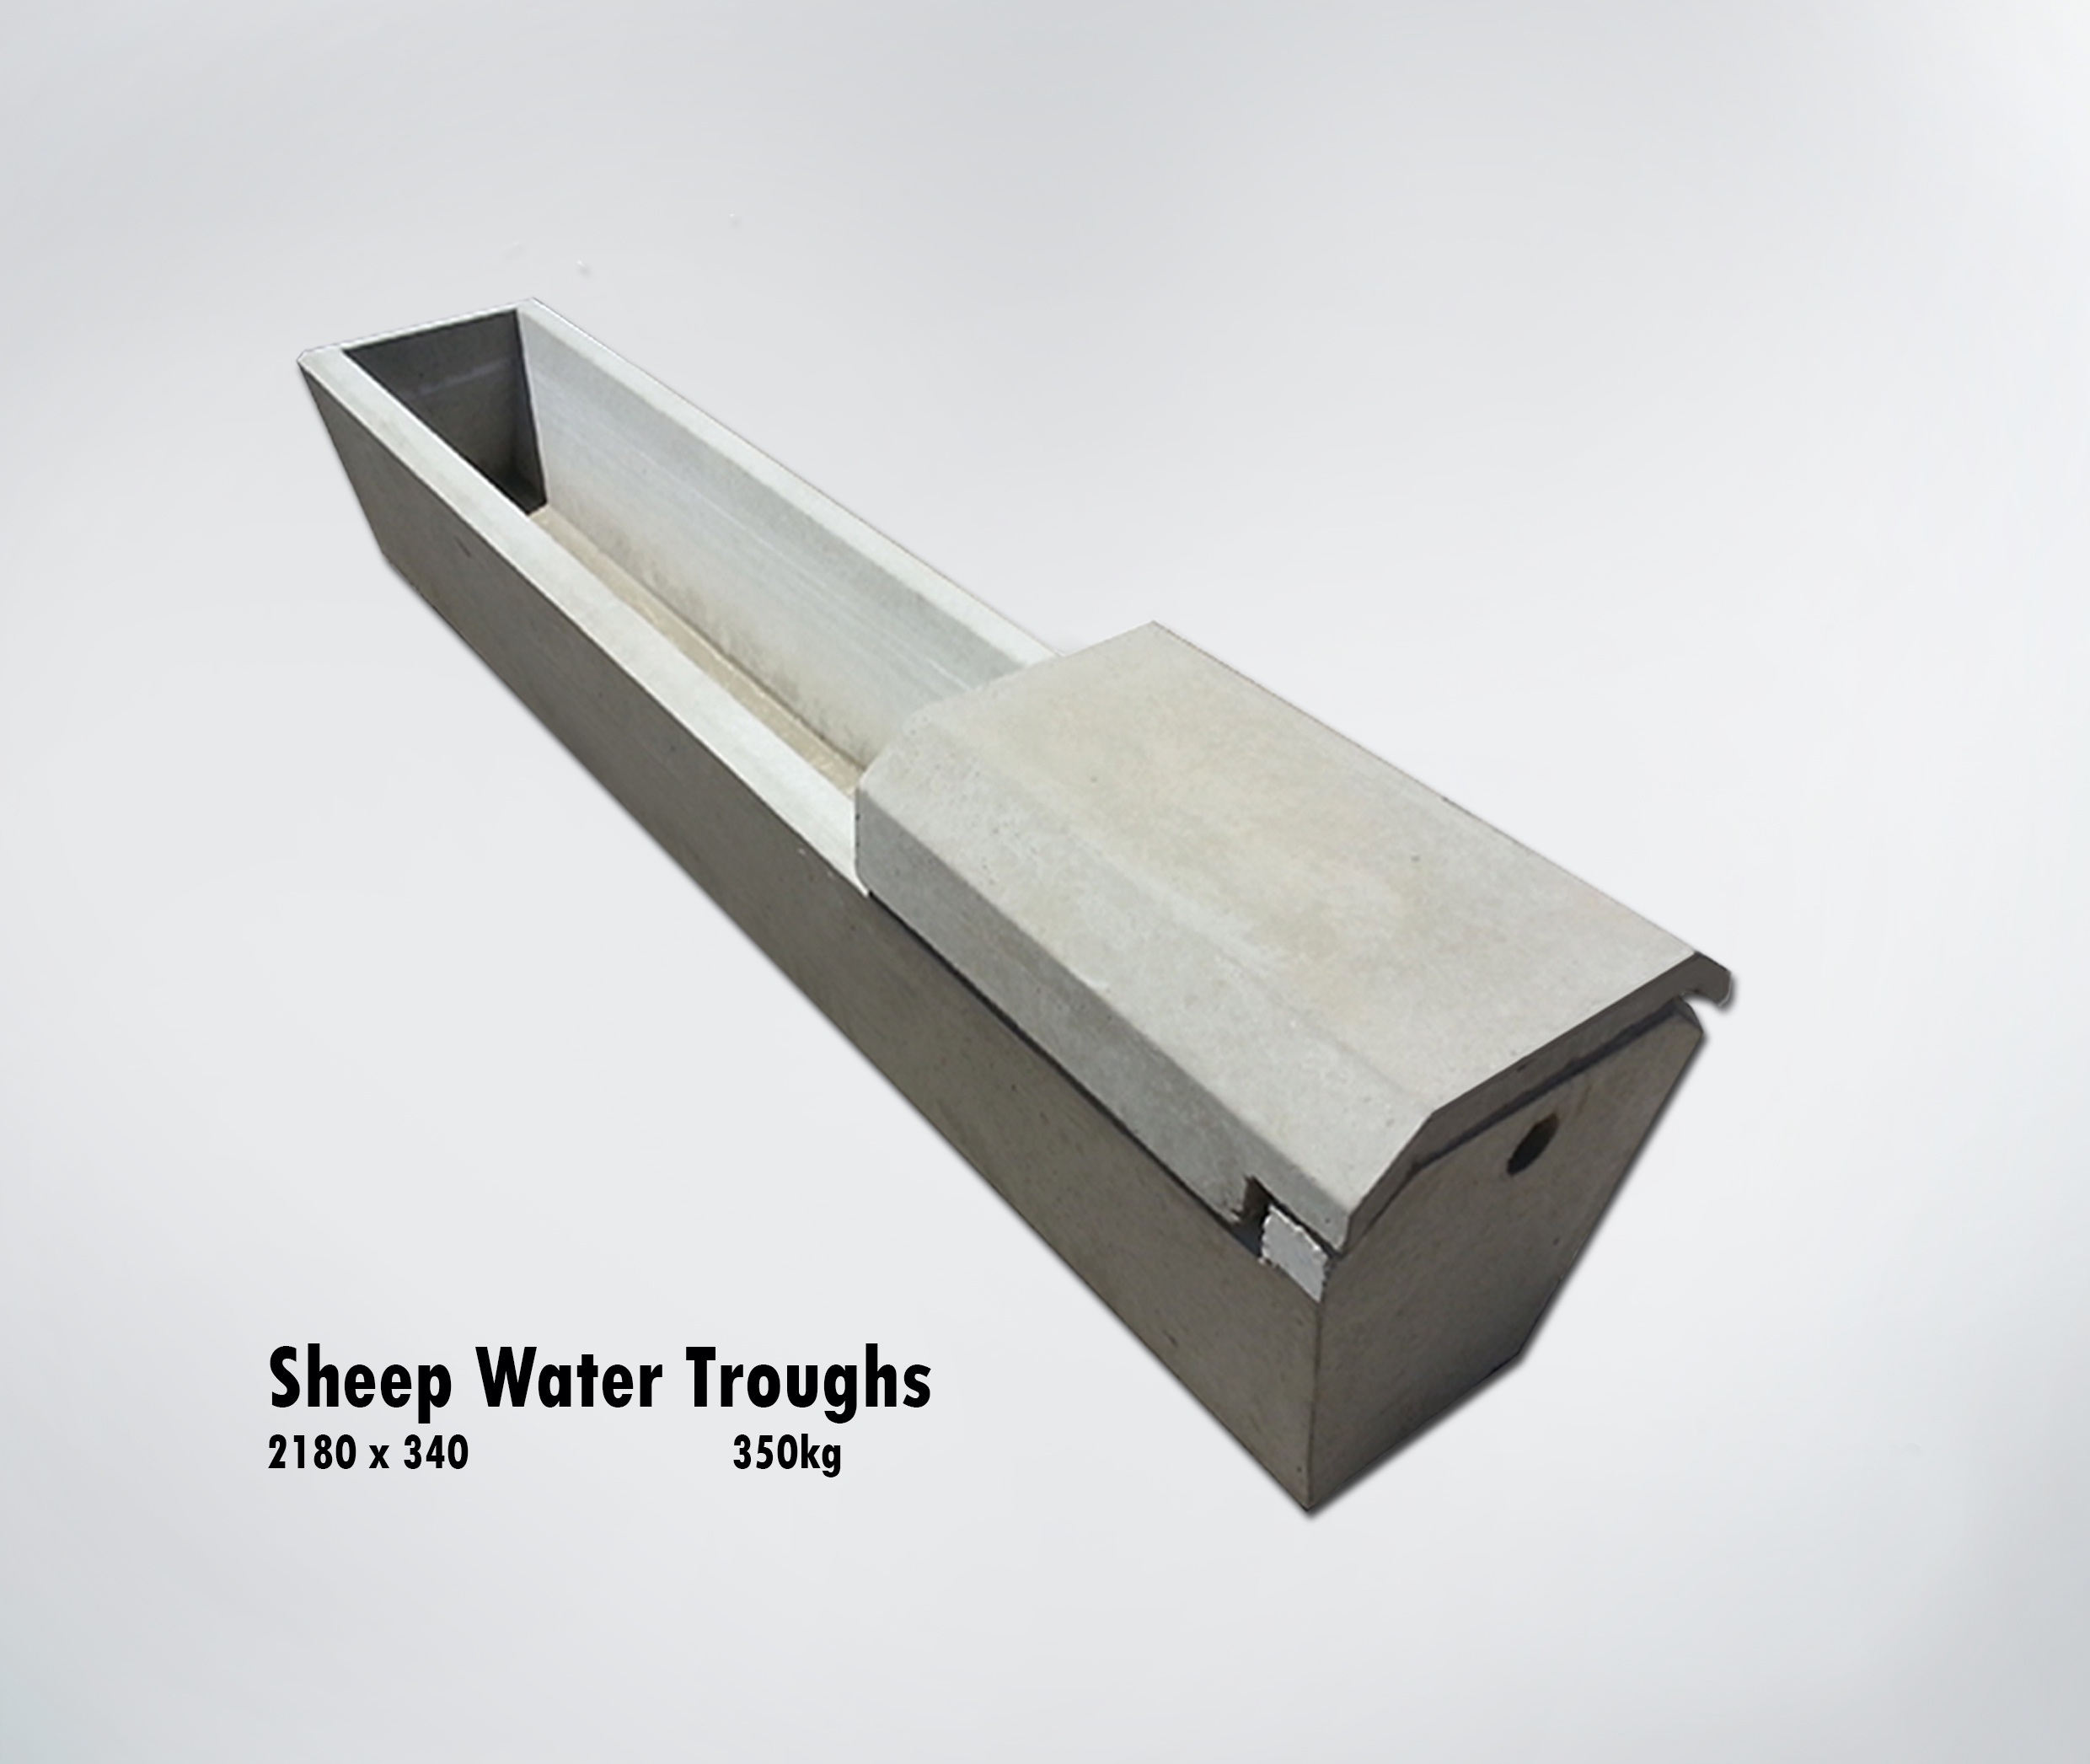 Sheep water trough